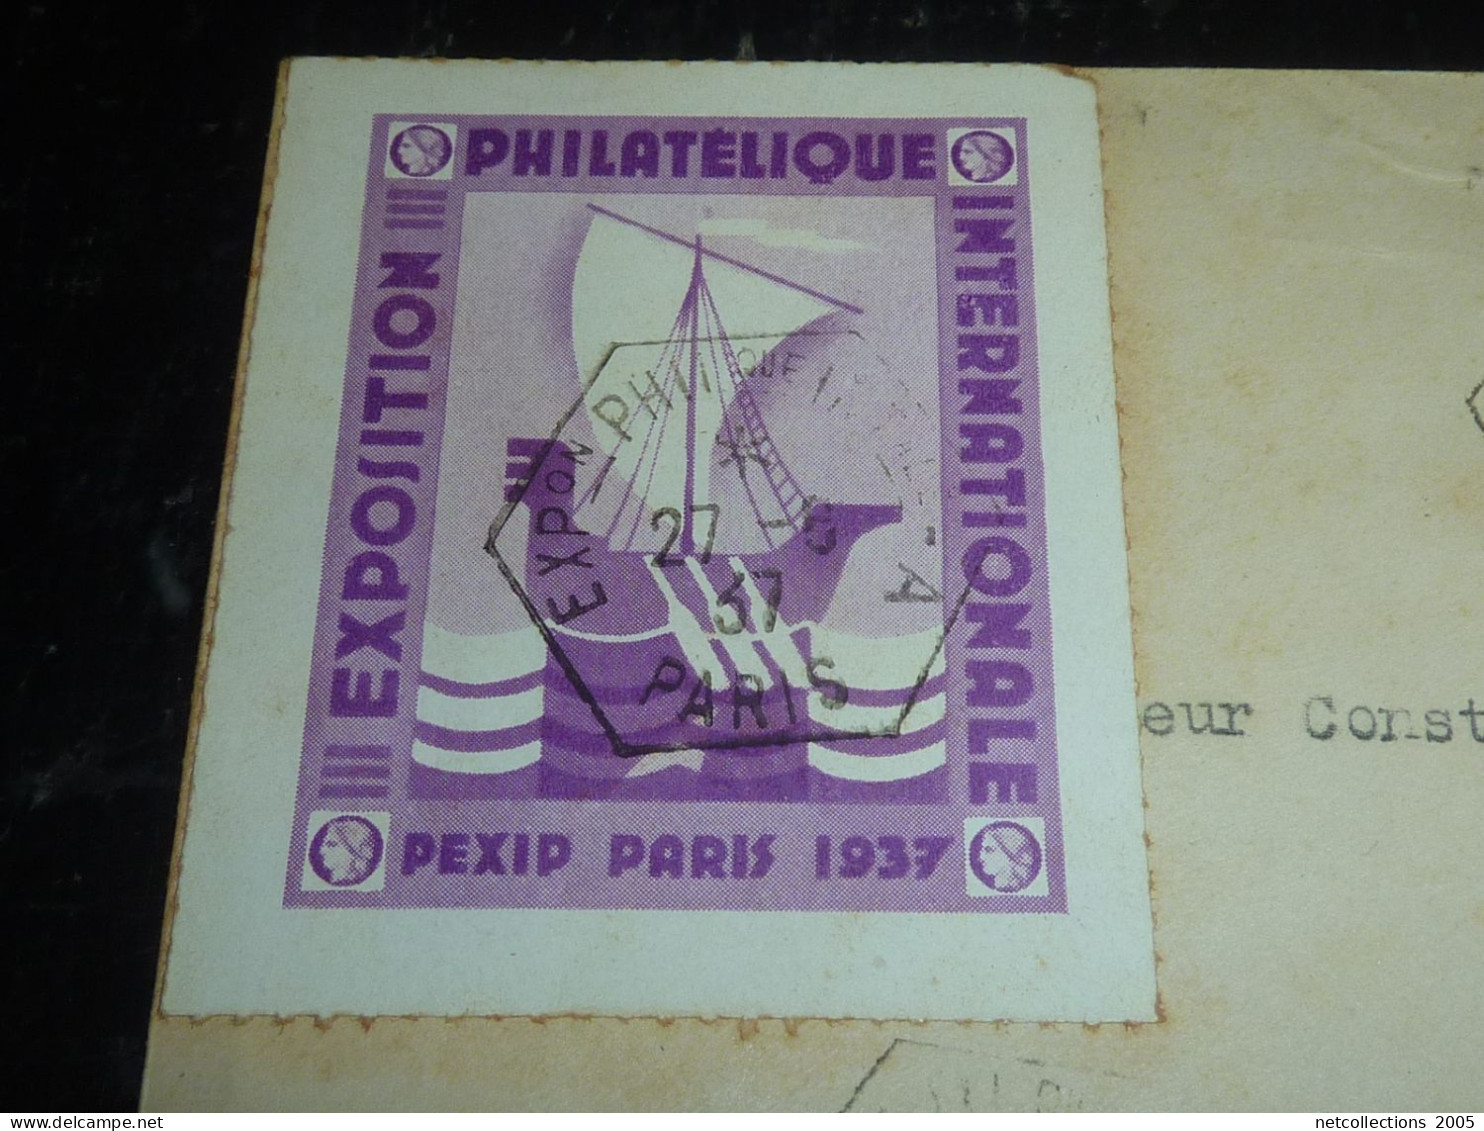 EXPOSITION PHILATELIQUE PEXIP PARIS 1937 - CACHET HEXAGONAL + TIMBRE N°329 + VIGNETTE (20/09) - Briefmarkenmessen